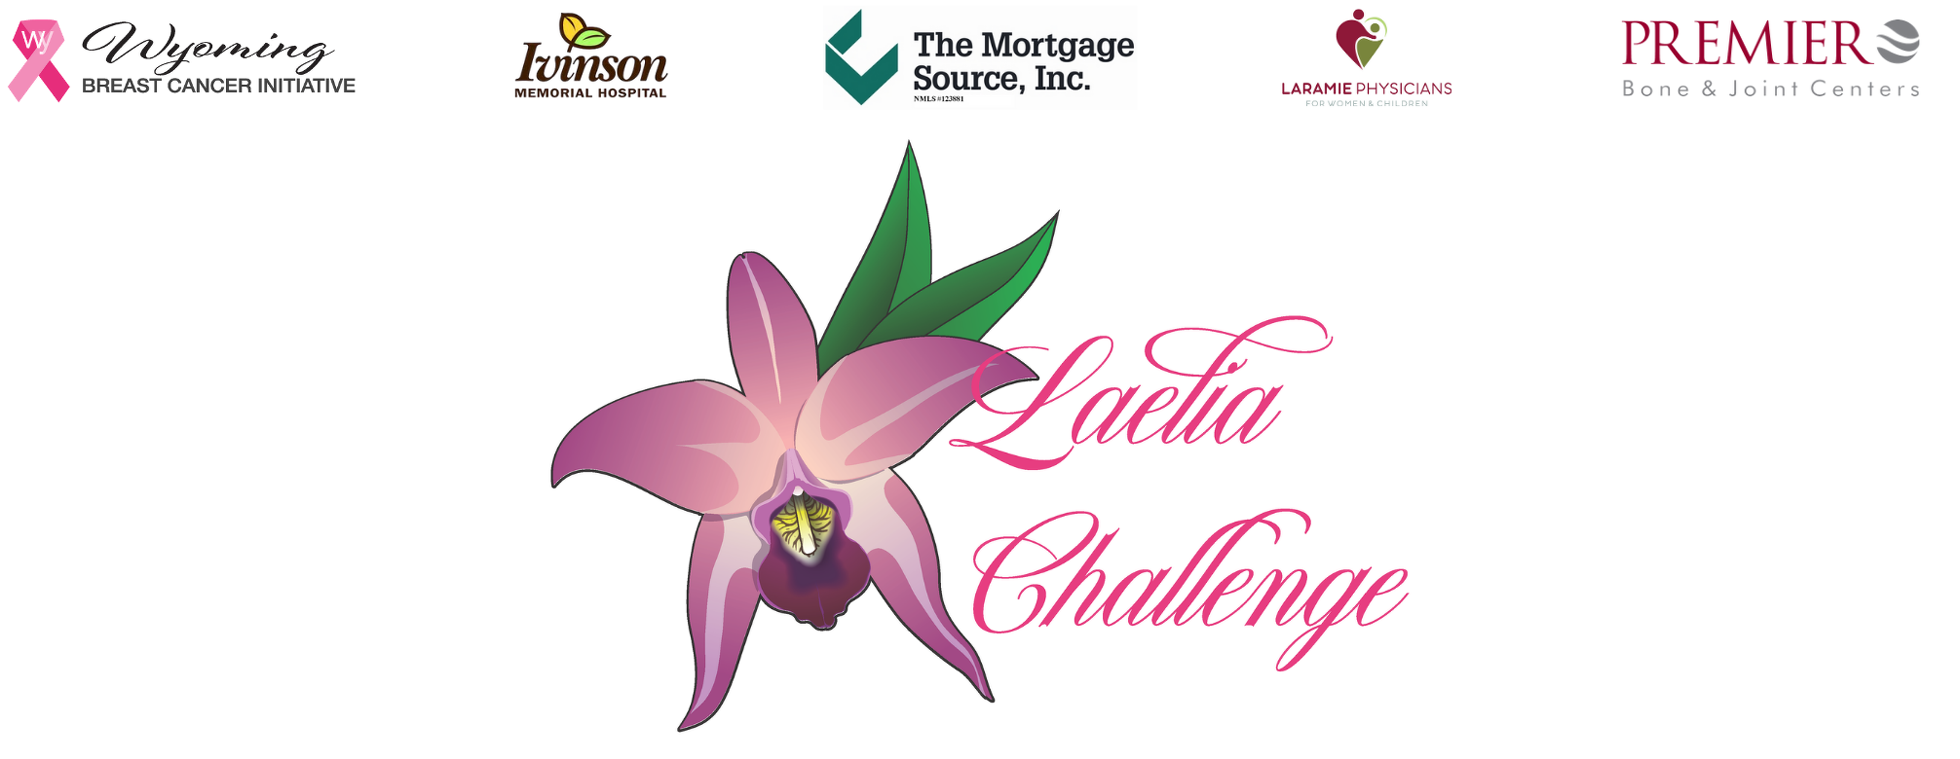 2020 Laelia Challenge